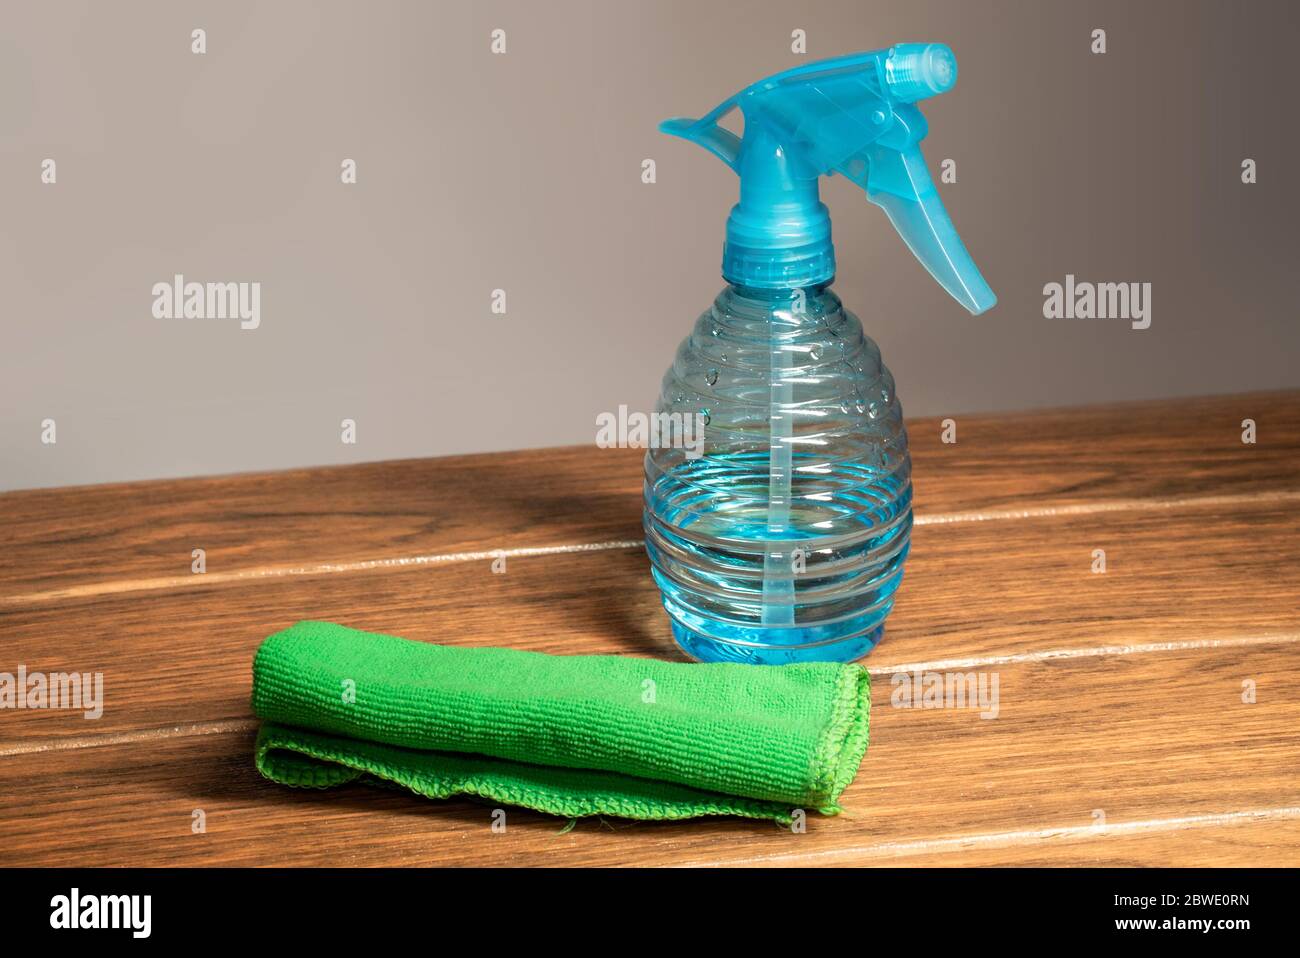 Une serviette en microfibre avec un pulvérisateur de nettoyage bleu sur un panneau en bois et un fond blanc Banque D'Images